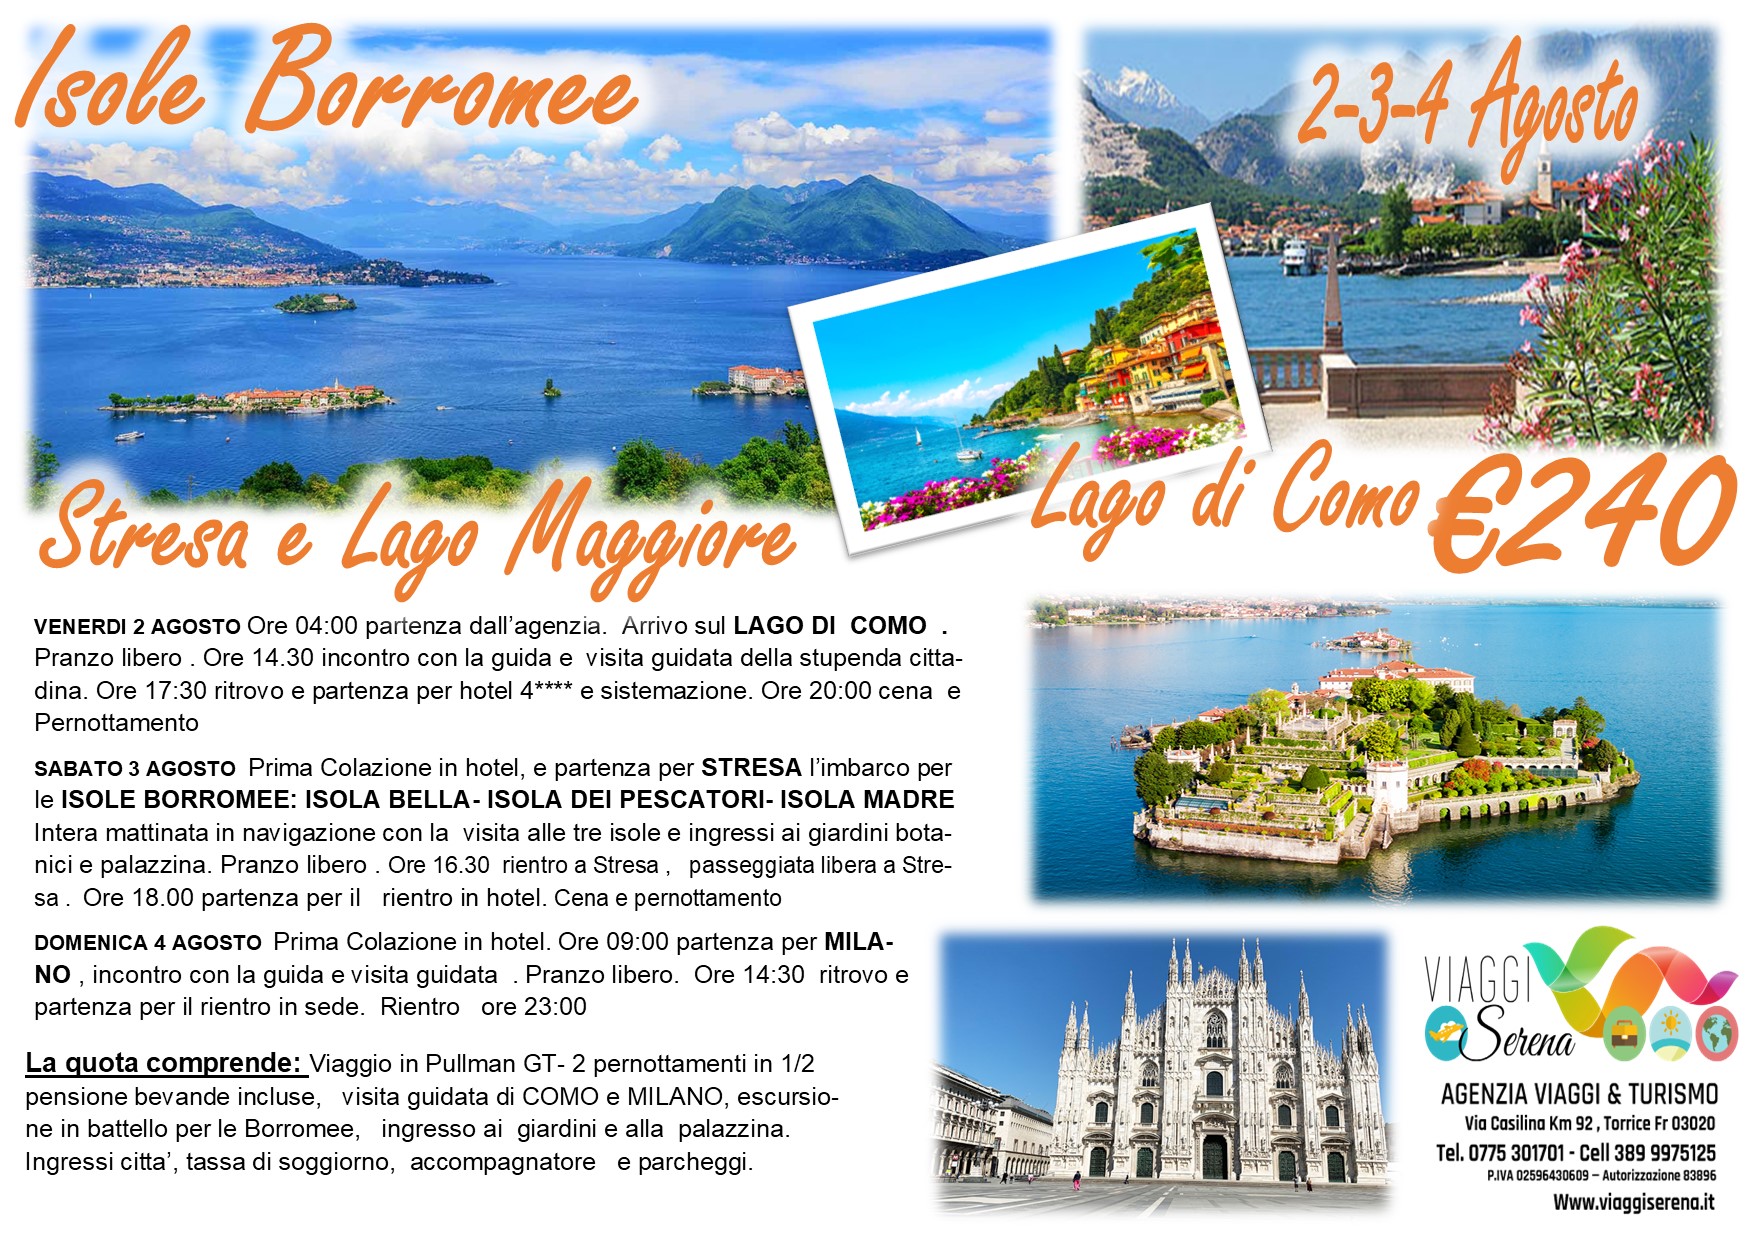 Viaggi di gruppo: Isole Borromee, Stresa, Como & Milano 2-3-4 Agosto €240,00